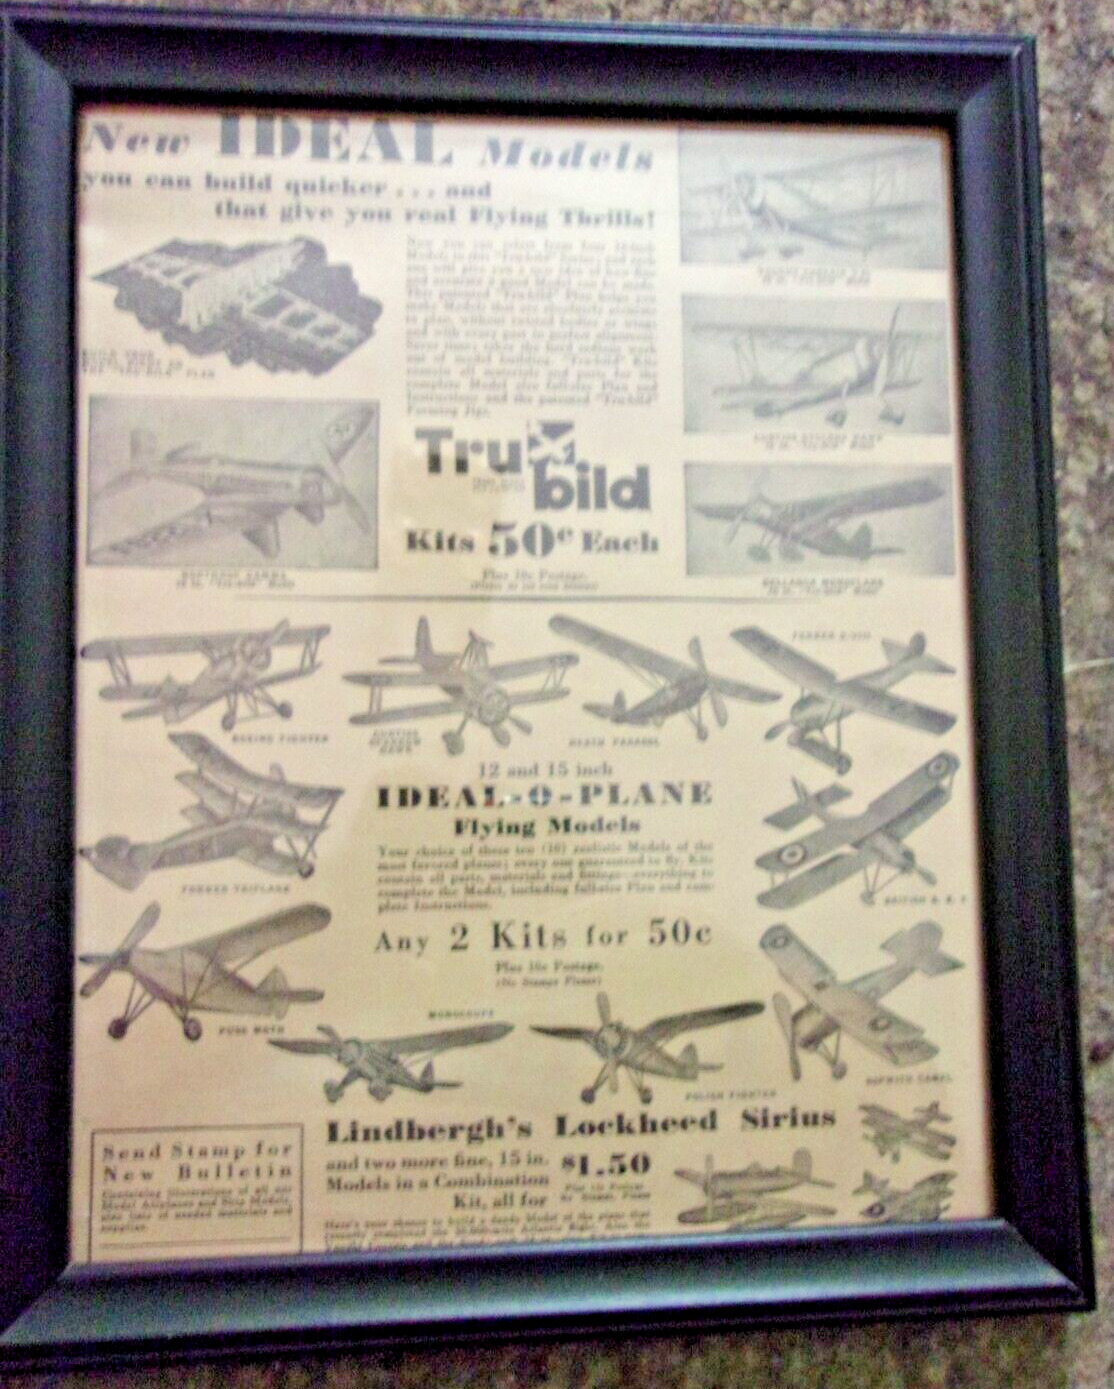 Ideal Models Wood Flying model kits Advertisment March 1934 Framed